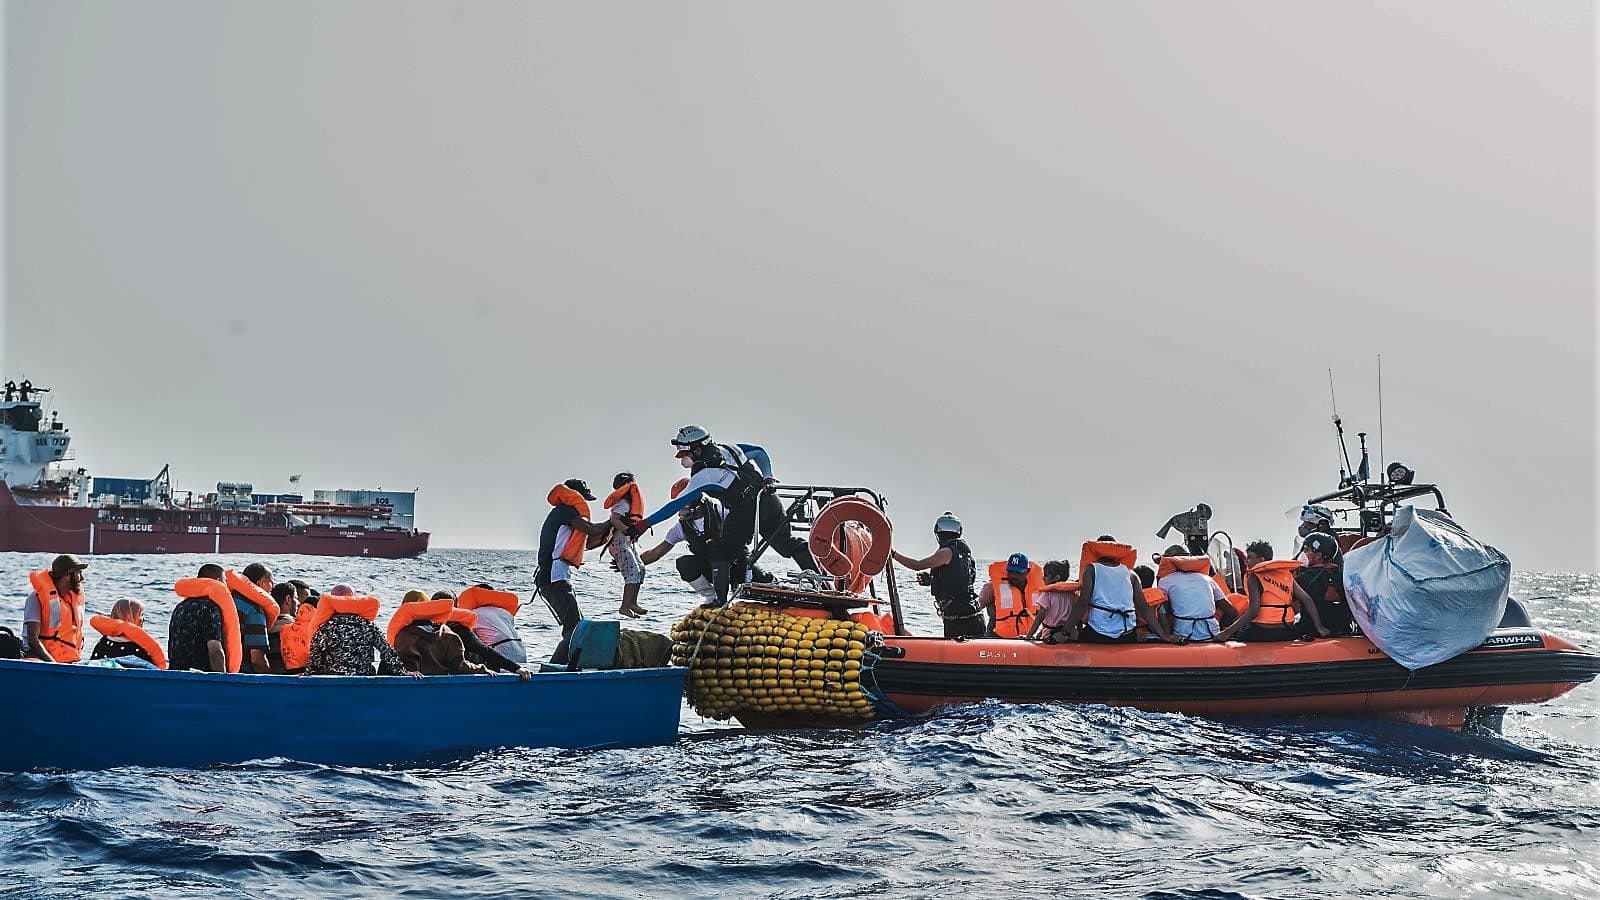 Siirtolaisia autetaan sinisestä veneestä oranssireunaiseen kumiveneeseen. Sukelluspukuinen mies ottaa juuri vastaan lasta. Taustalla näkyy punavalkoinen Ocean Viking -alus.